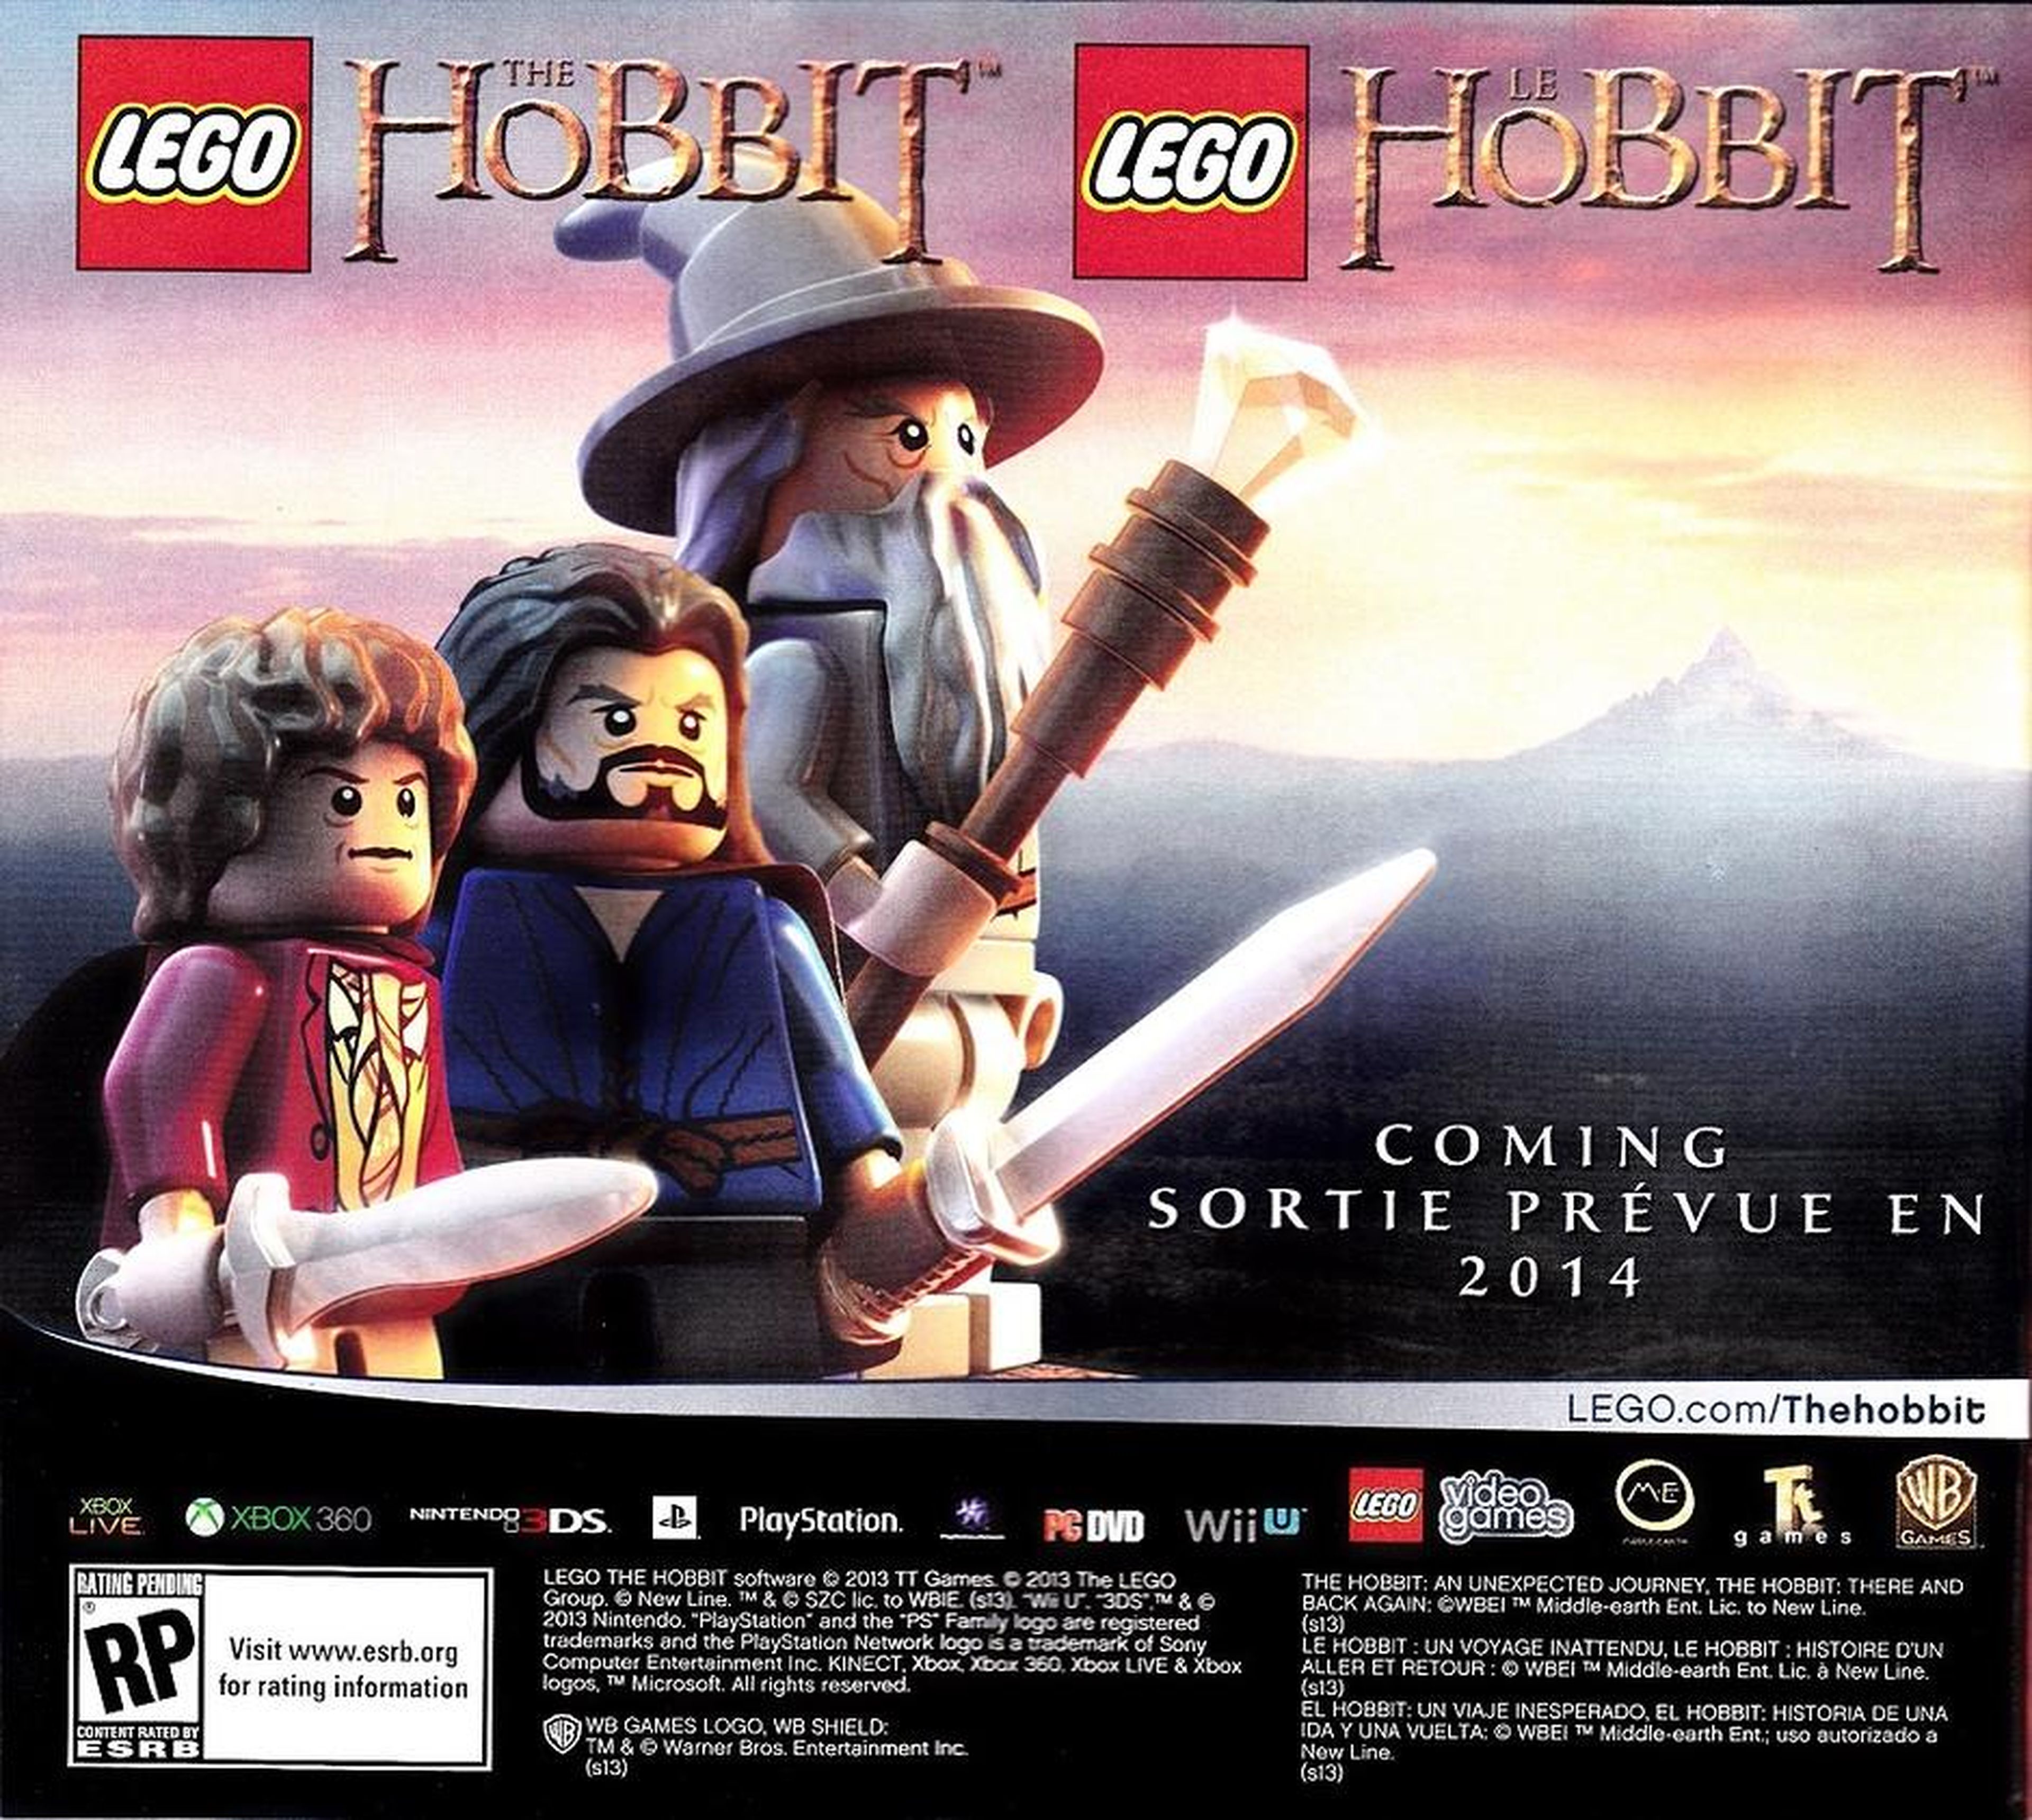 La versión Lego de El Hobbit para 2014